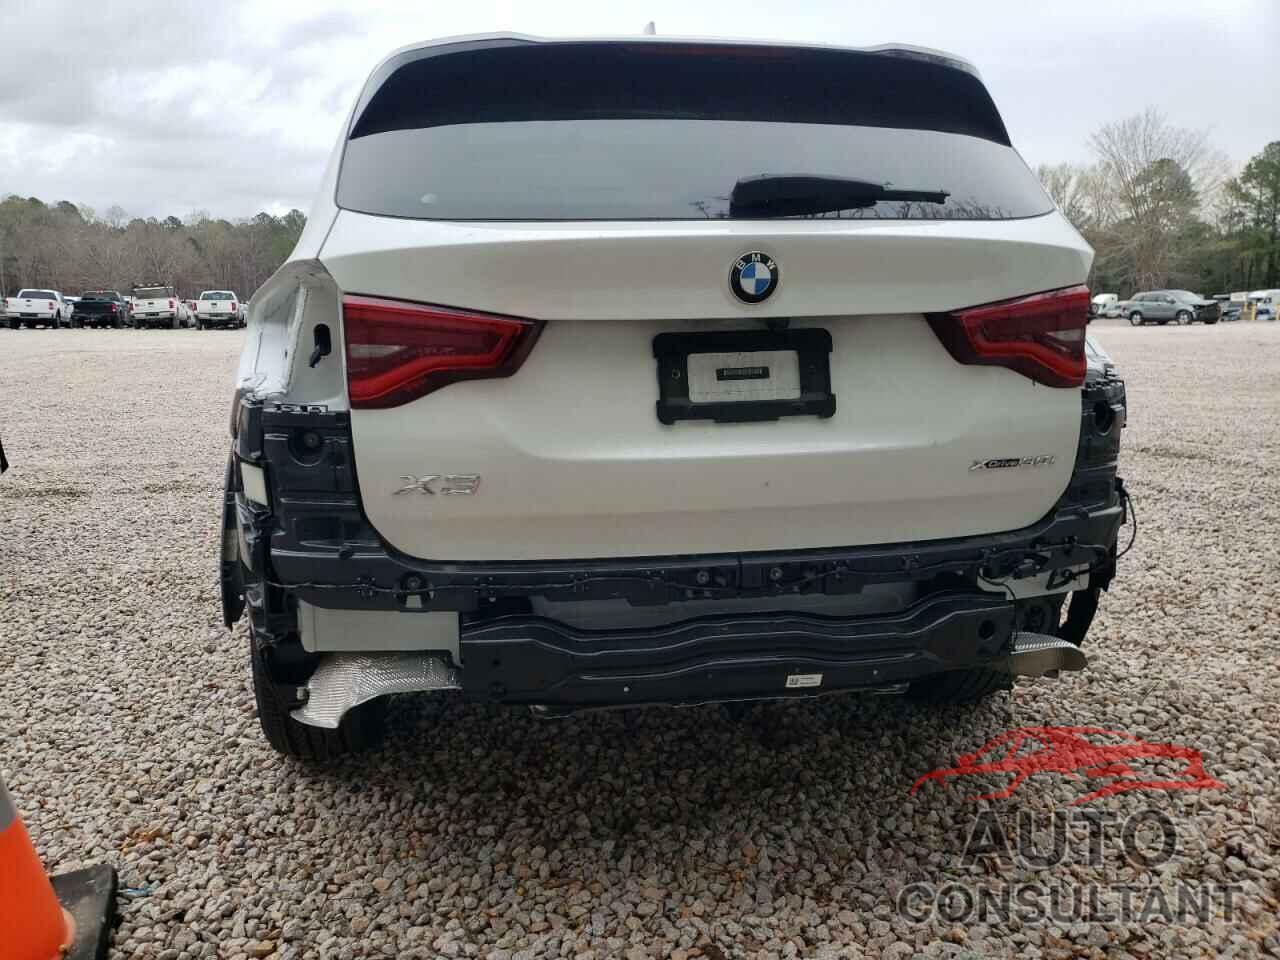 BMW X3 2020 - 5UXTY5C03L9C12181